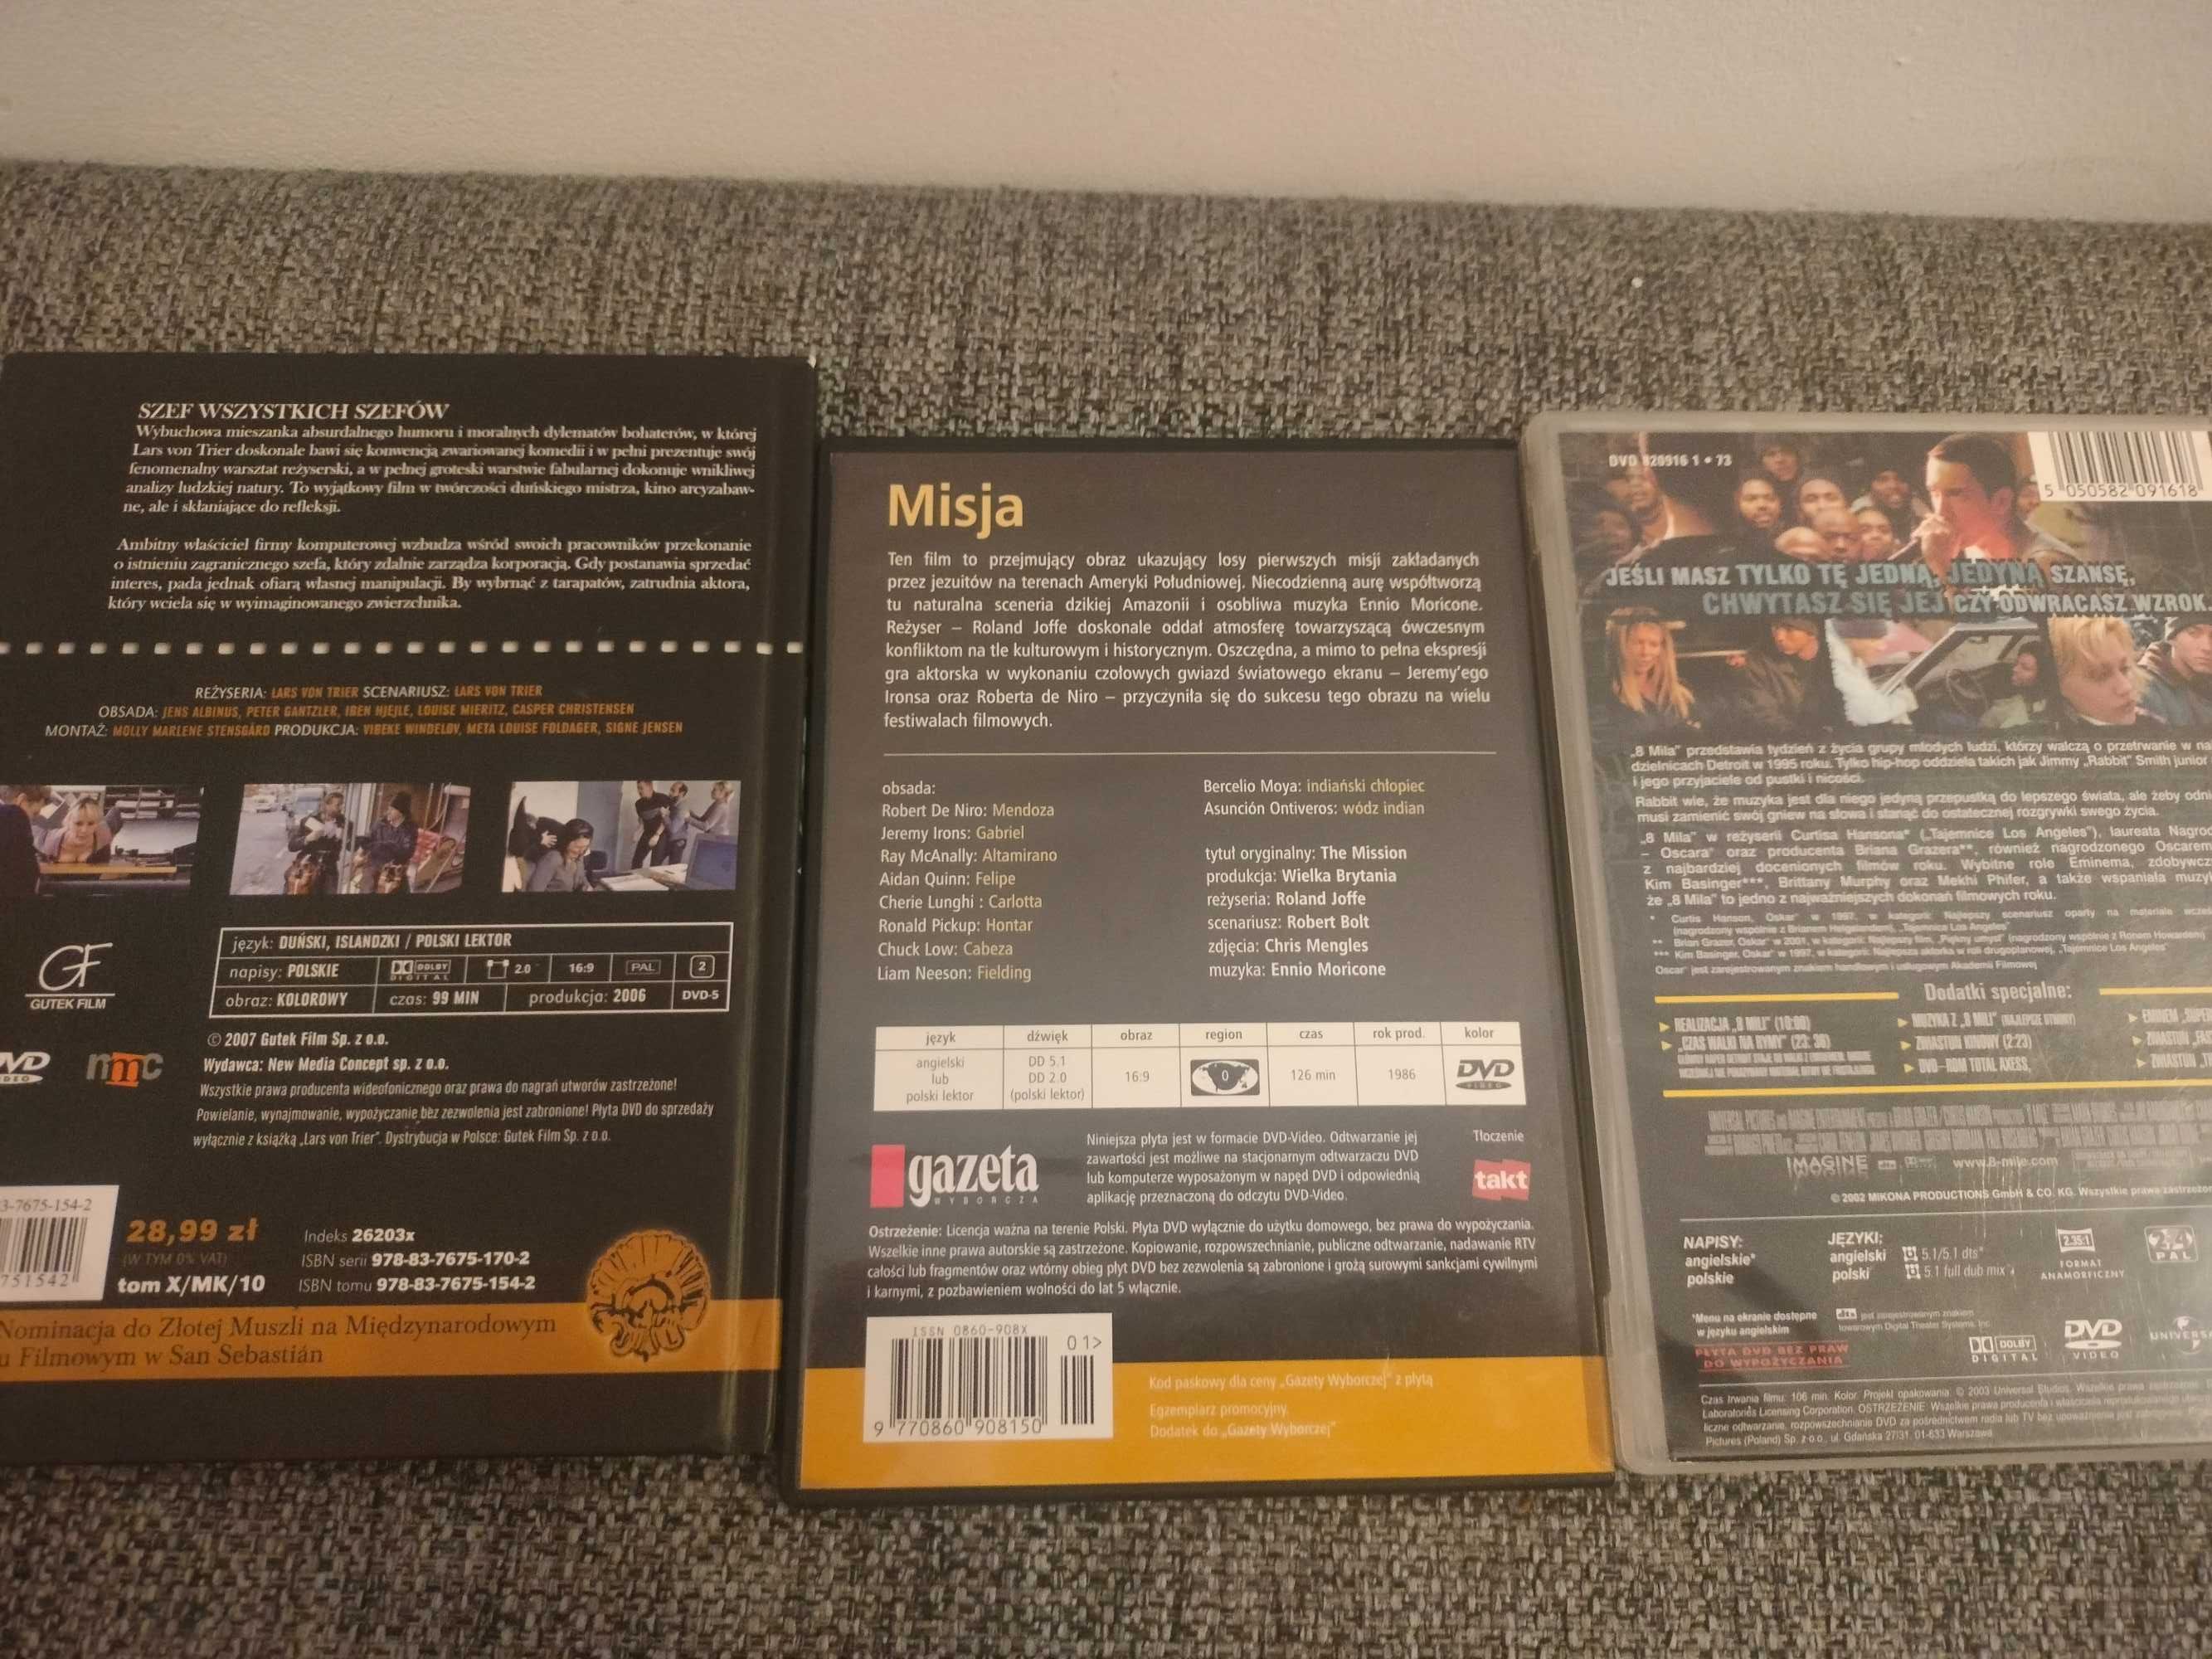 3 filmy DVD. "Misja", "8 Mila", "Szef wszystkich szefów